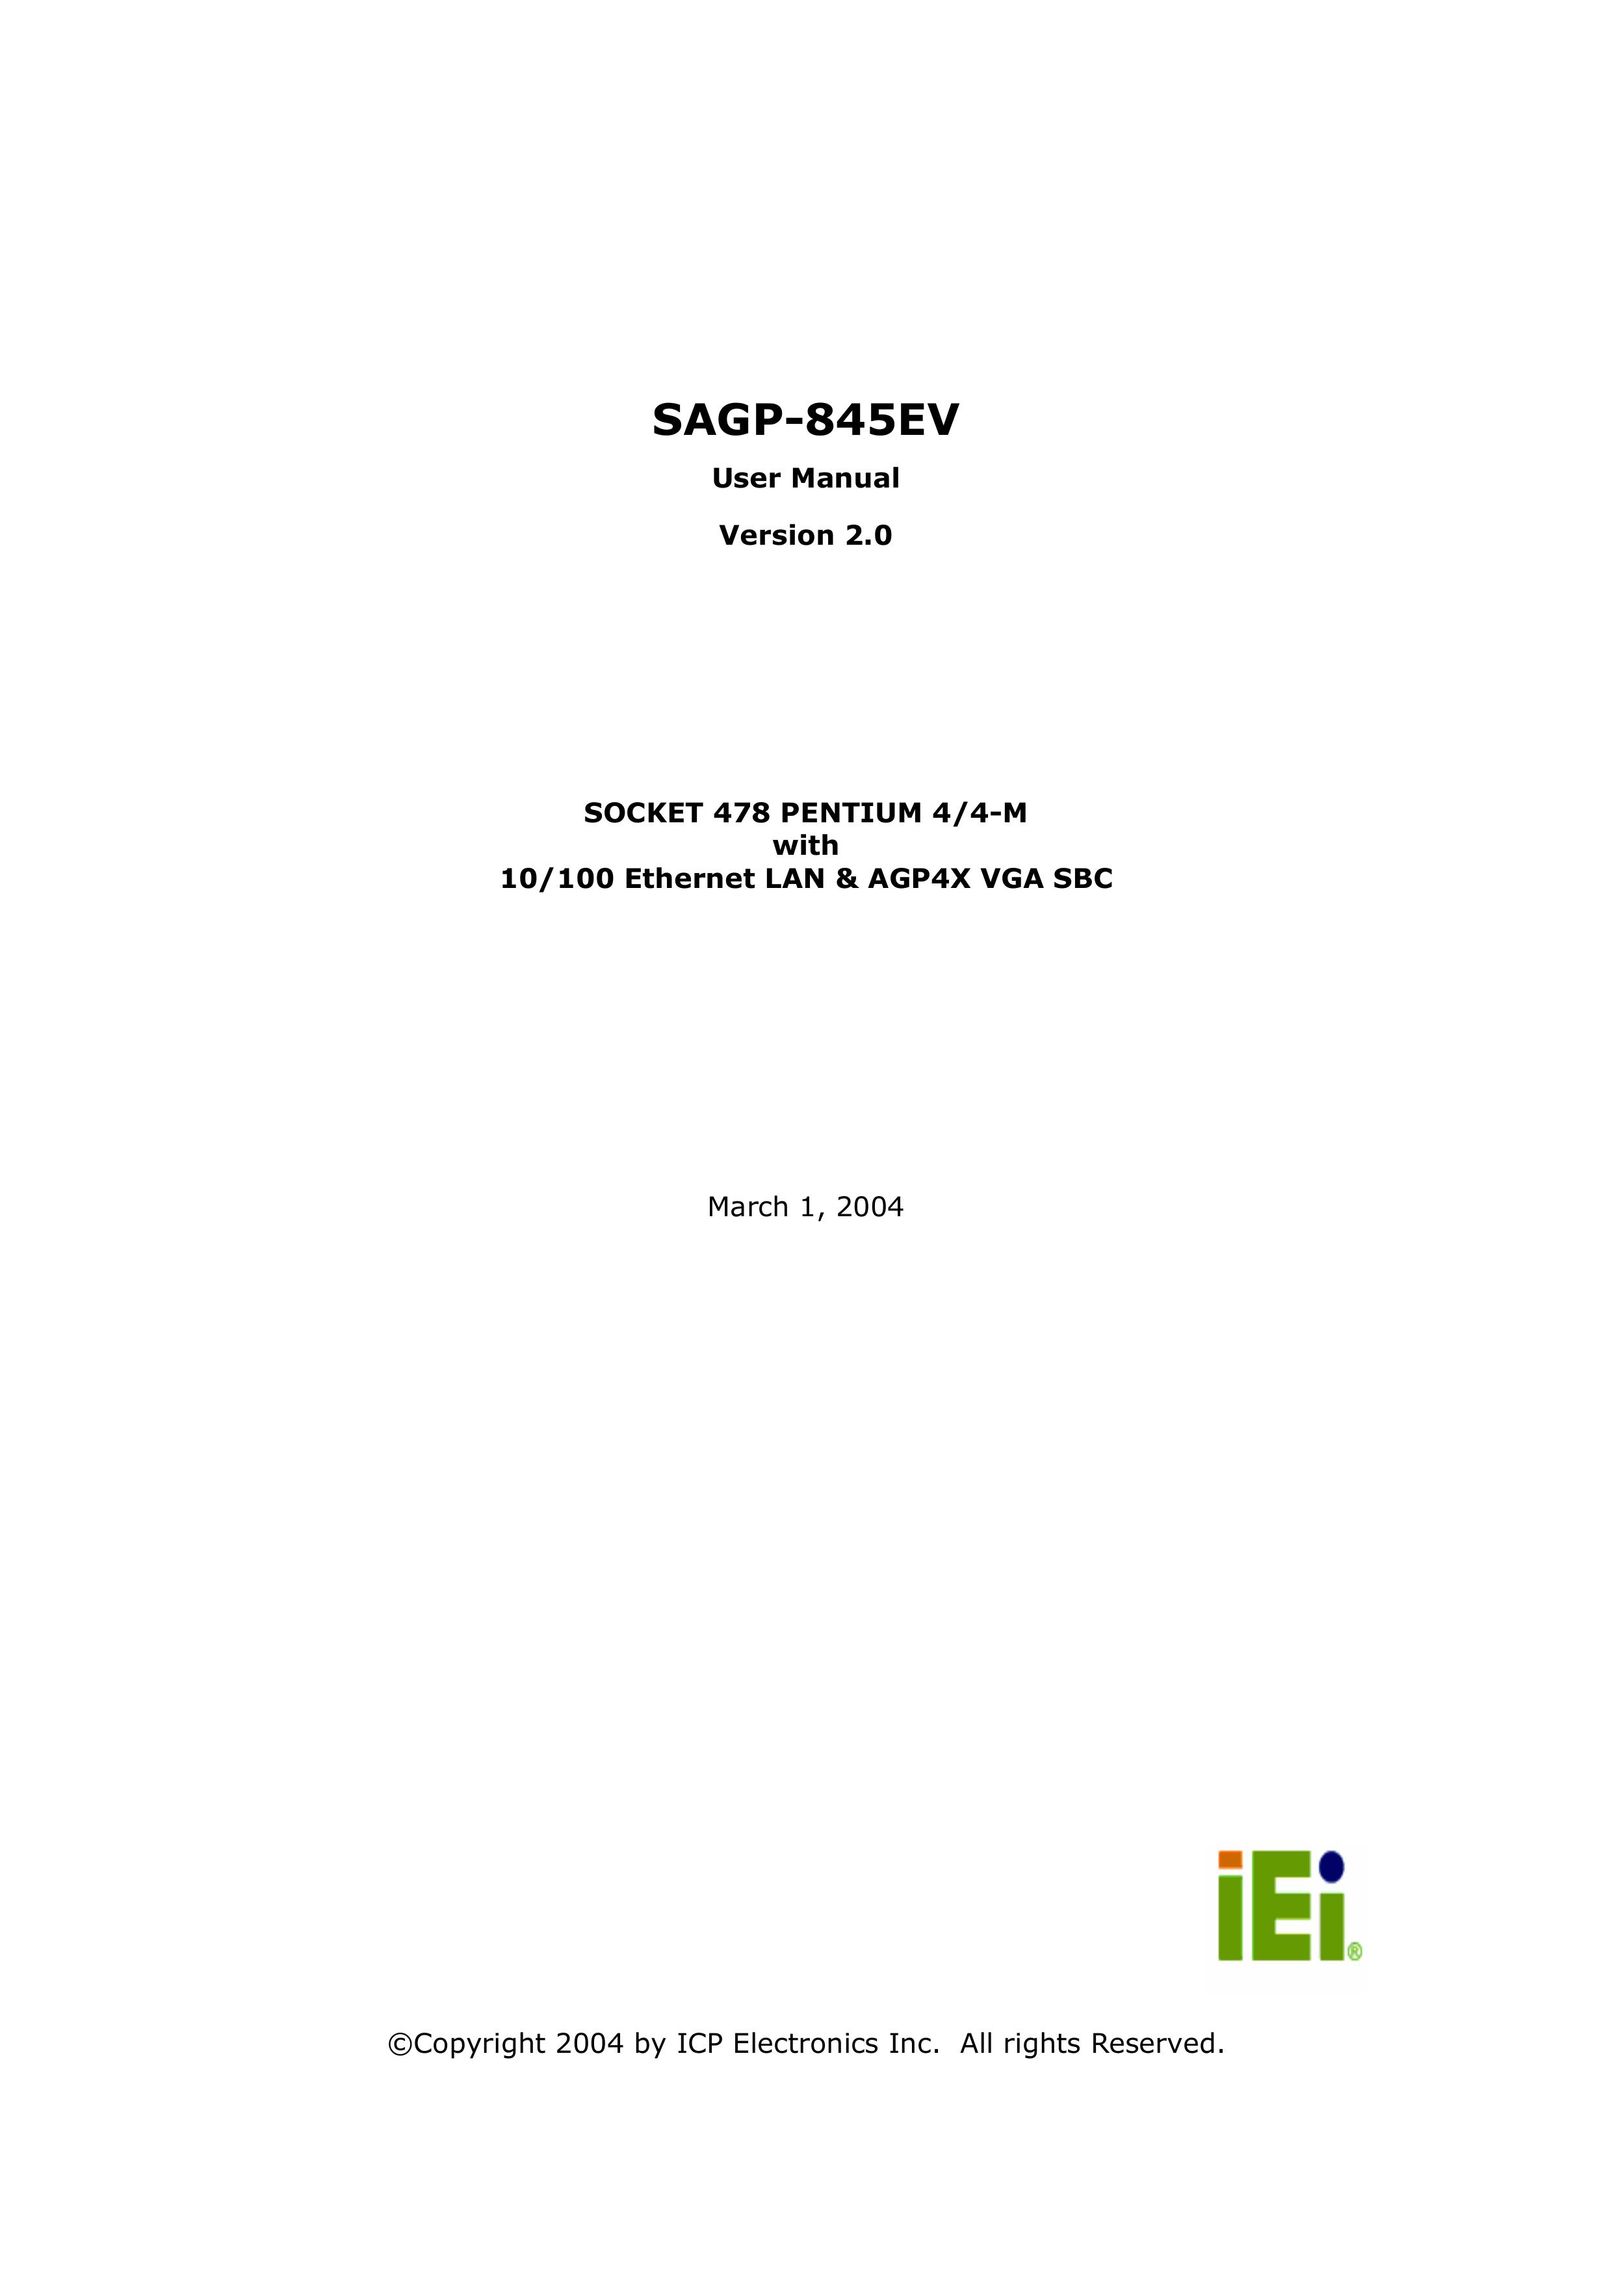 IBM SAGP-845EV Network Router User Manual